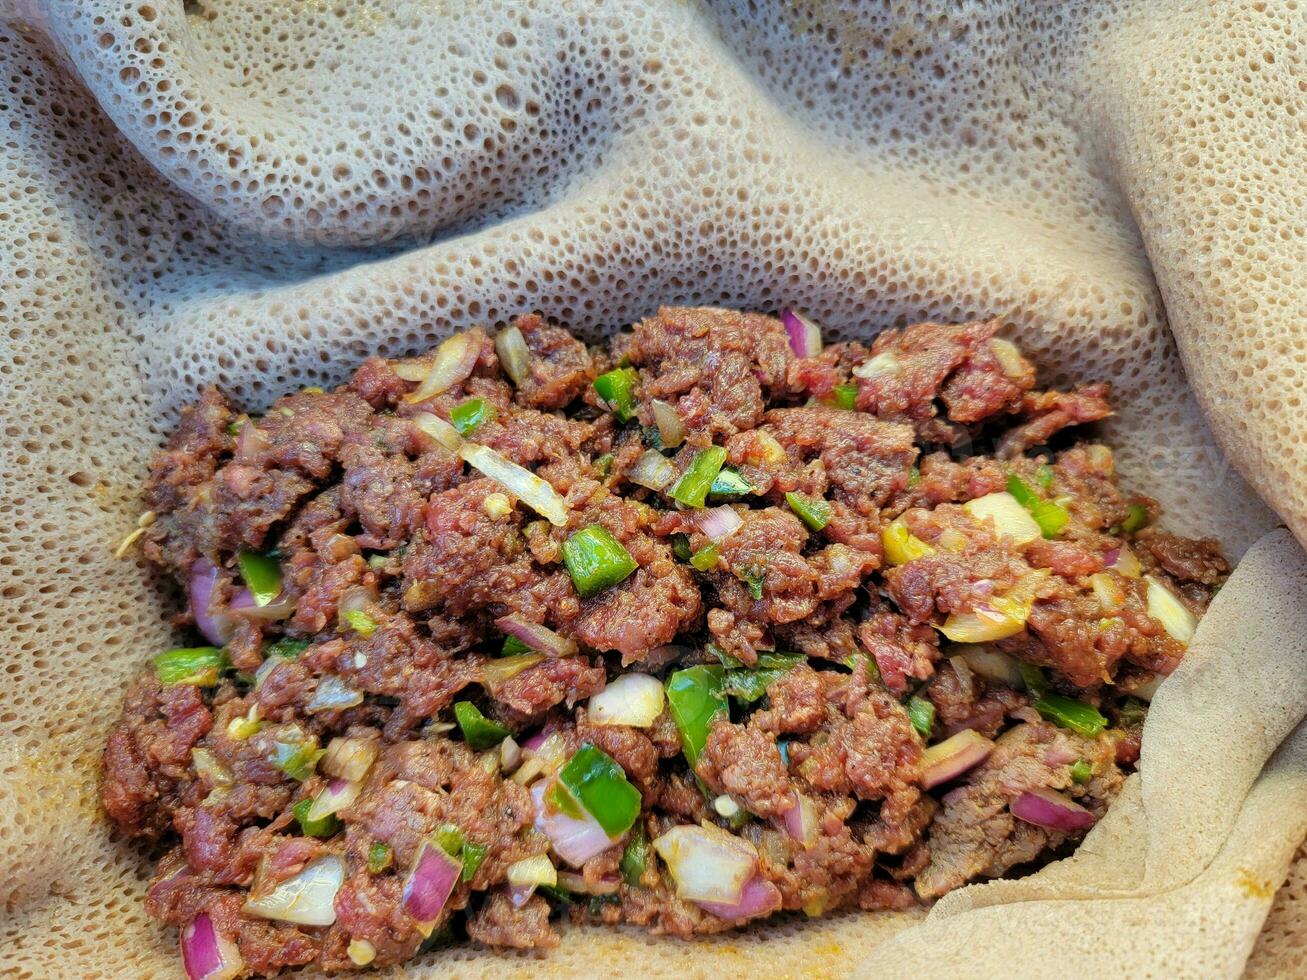 råbiff etiopisk delikatess som heter kitfo med bröd och paprika foto